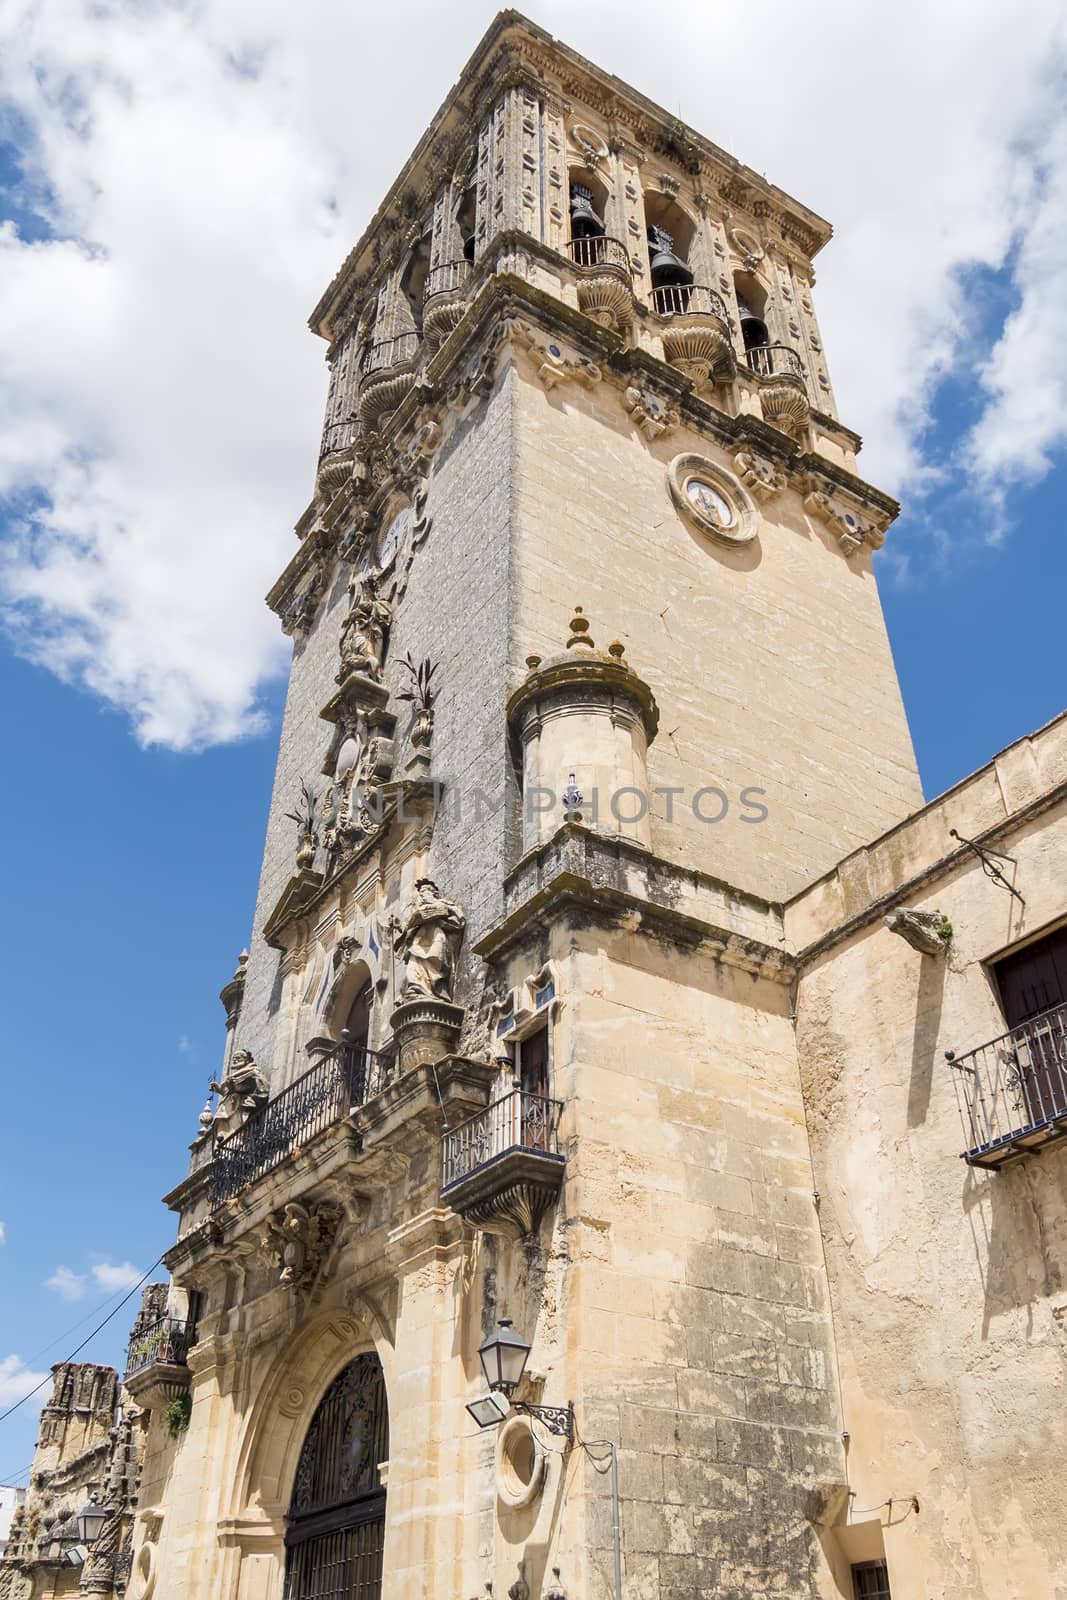 Church of Santa Maria de la Asuncion, Arcos de la Frontera, Spai by max8xam